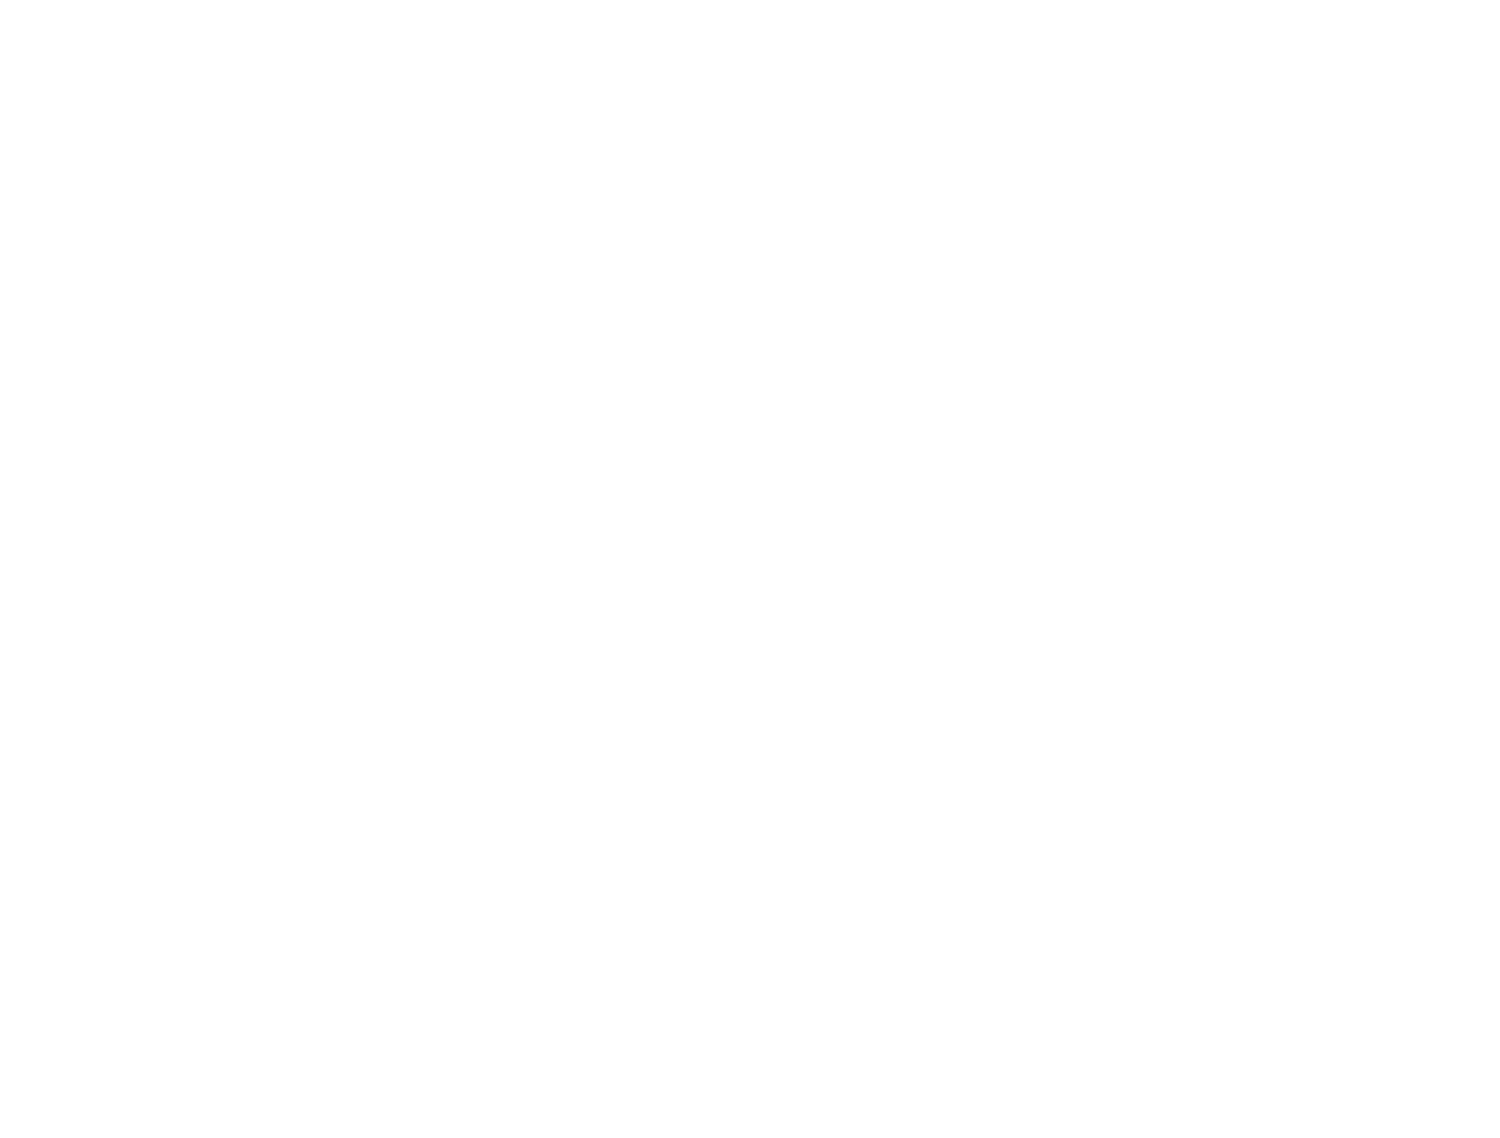 LAZY BEAR NCL